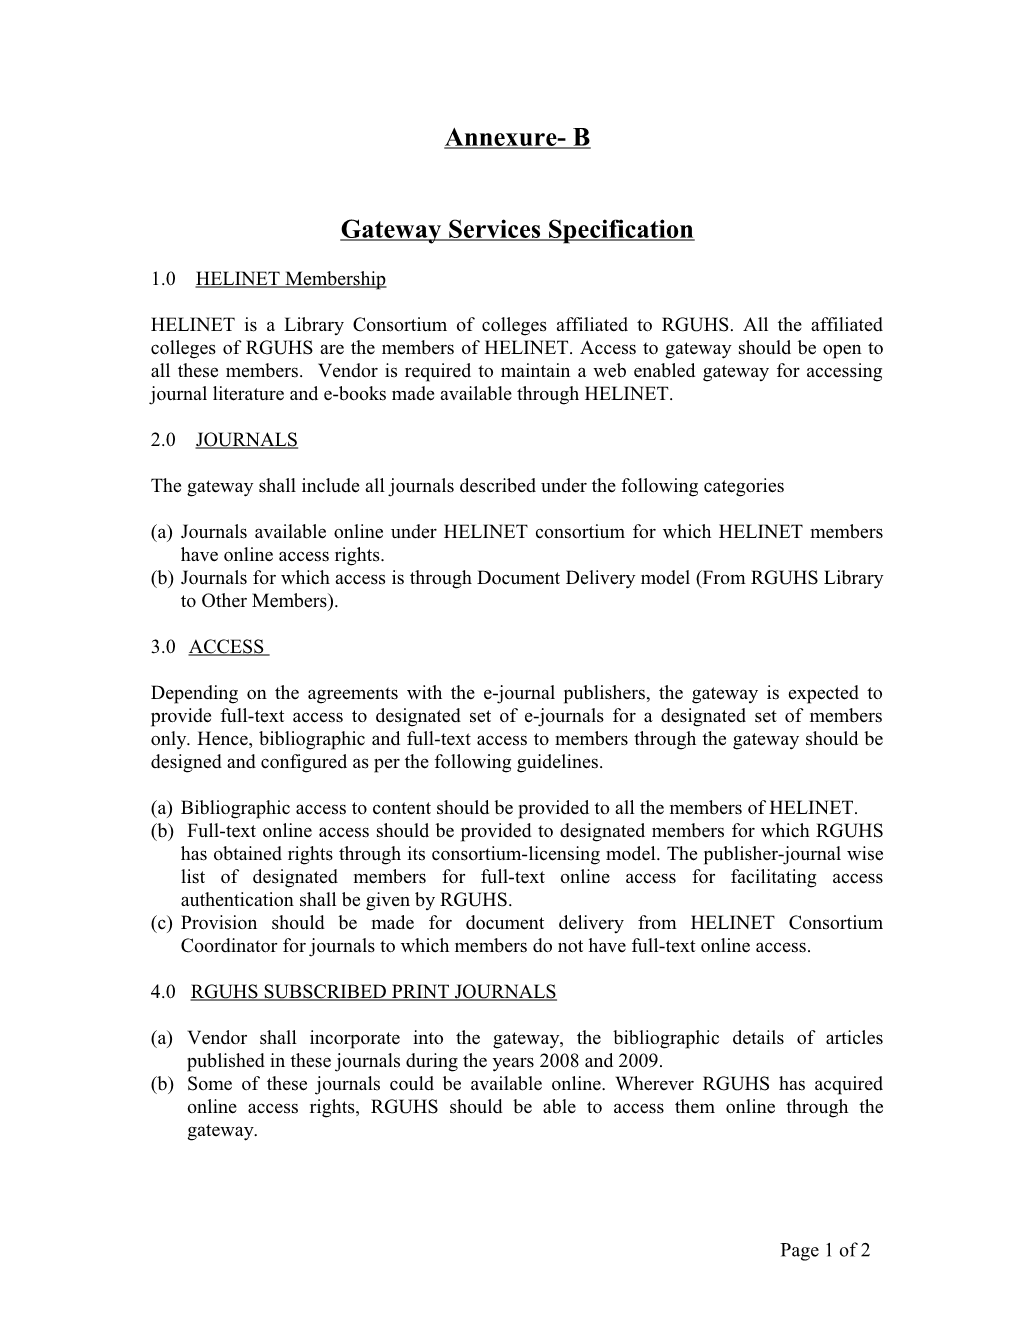 J-Gate HELINET - Development Specifications